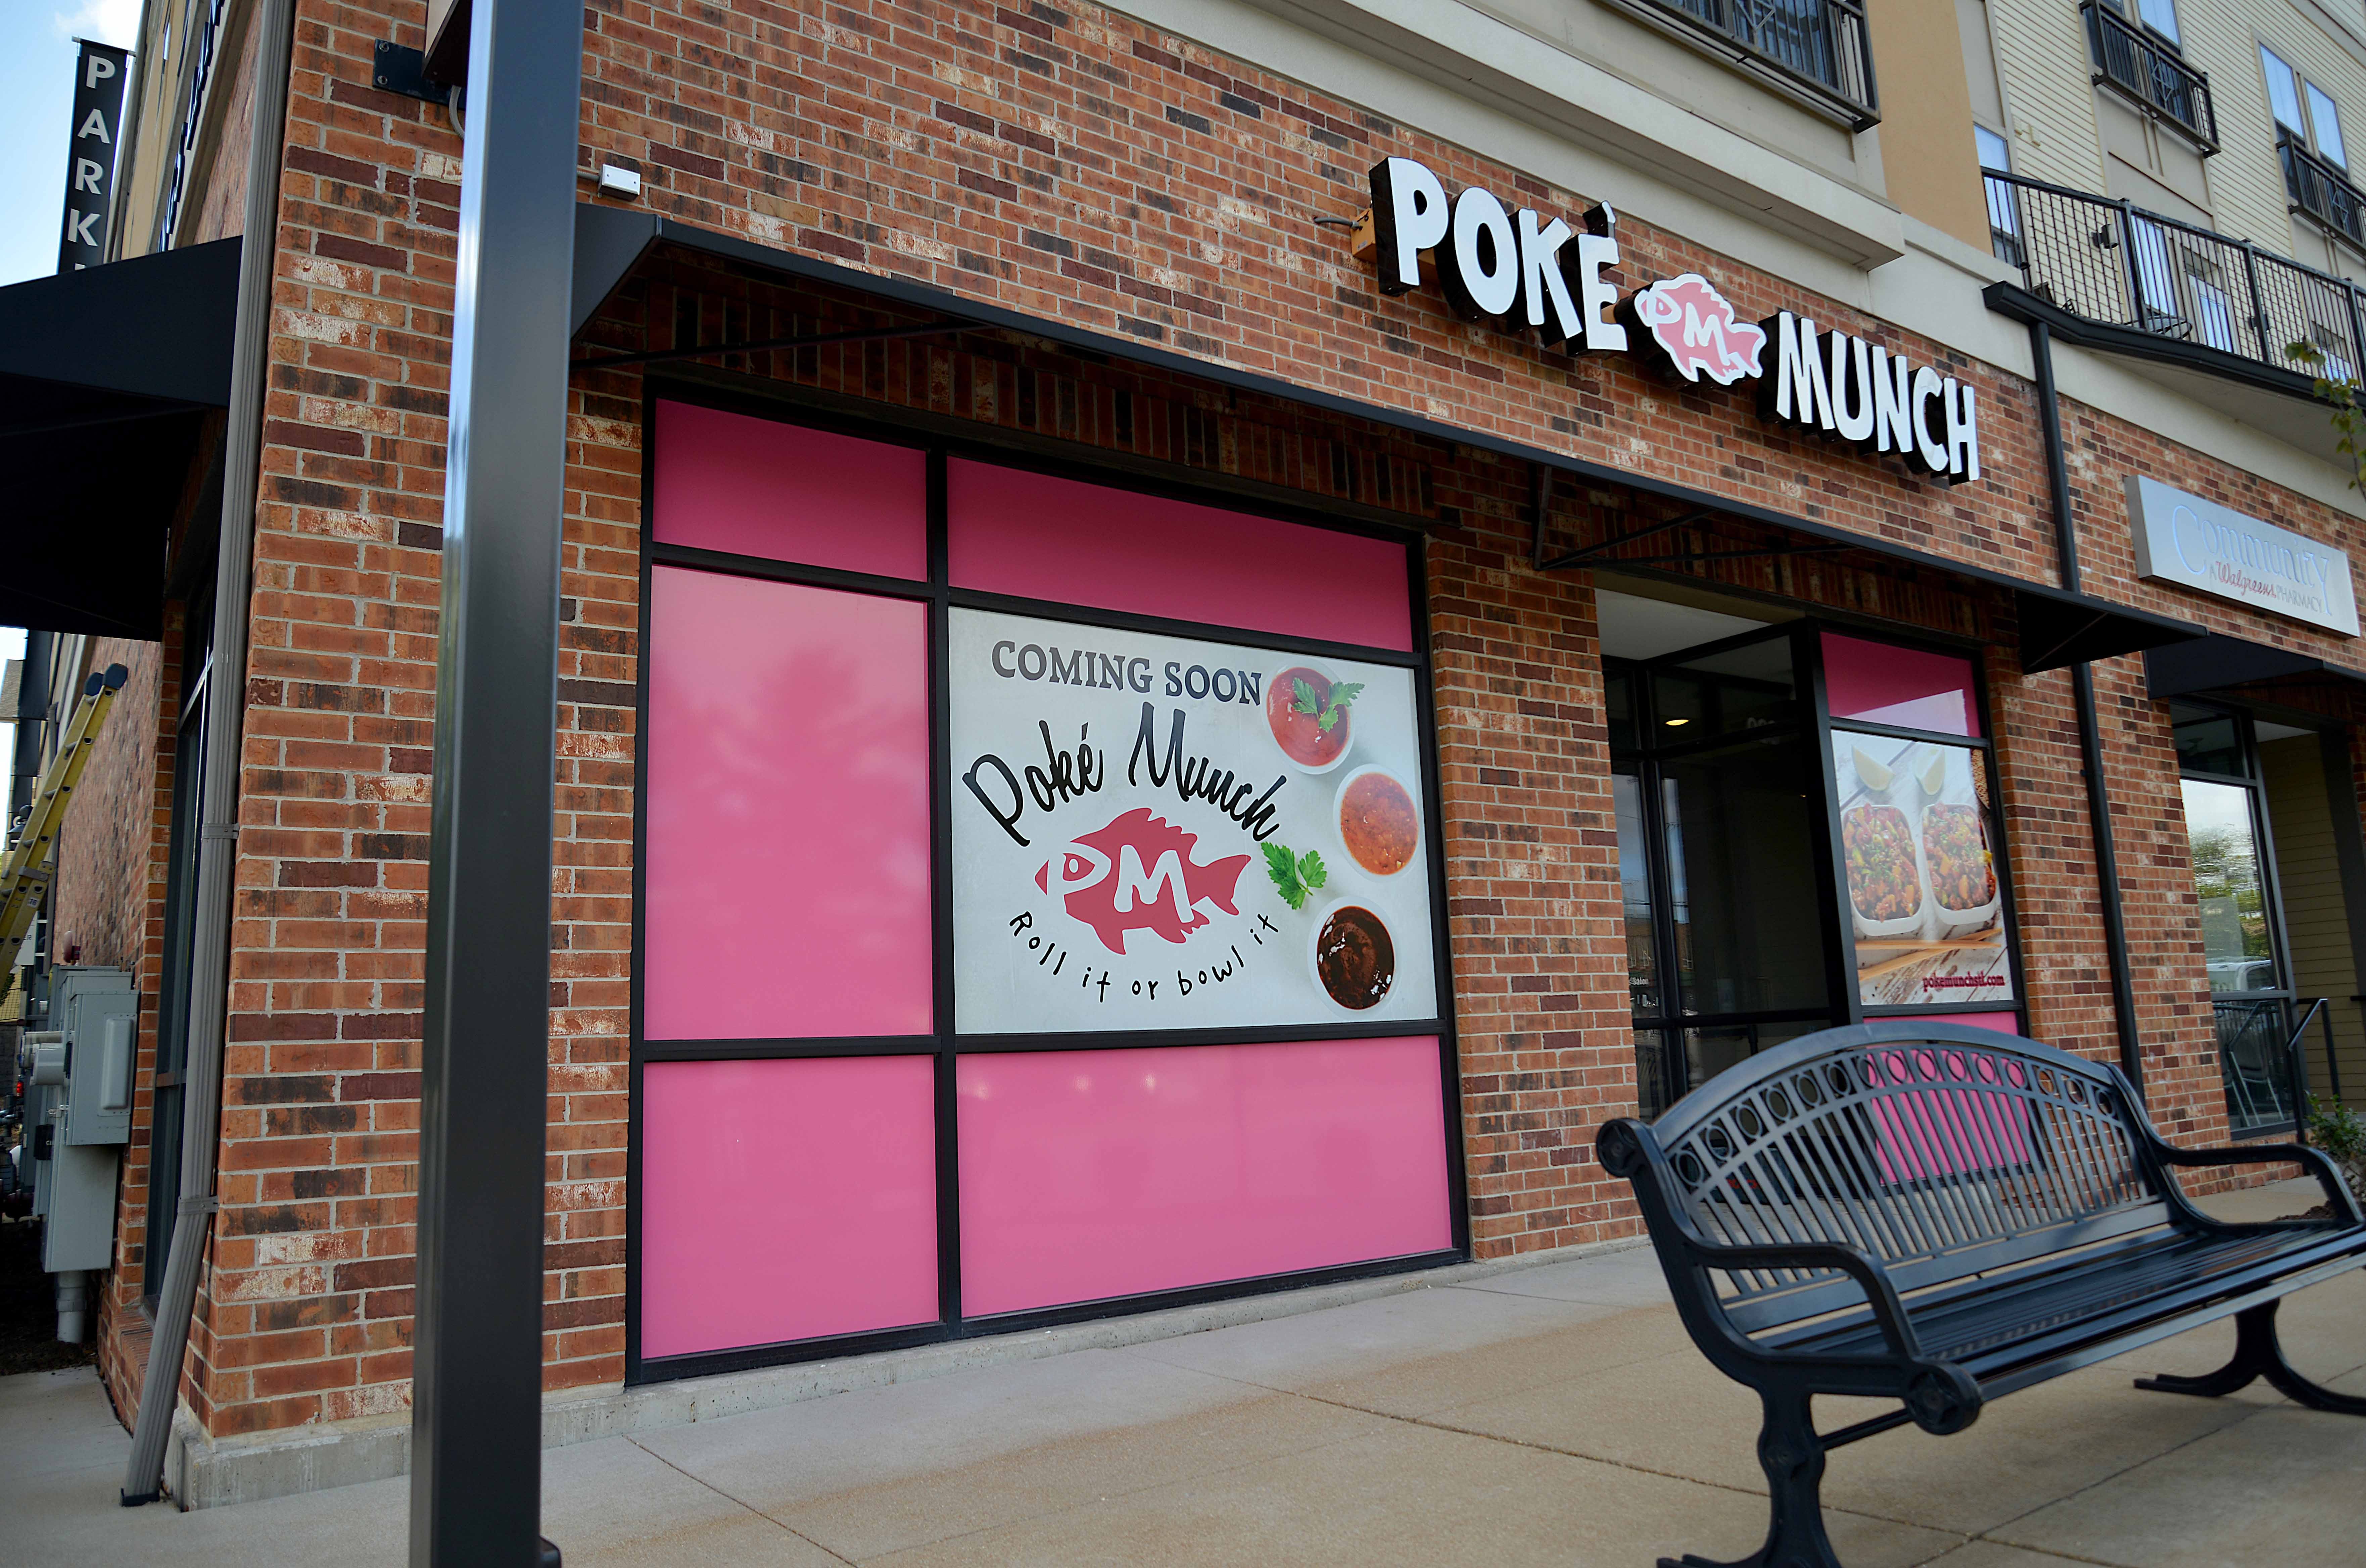 Poke in St. Louis, Poke Munch, Food, Fish, Chicken